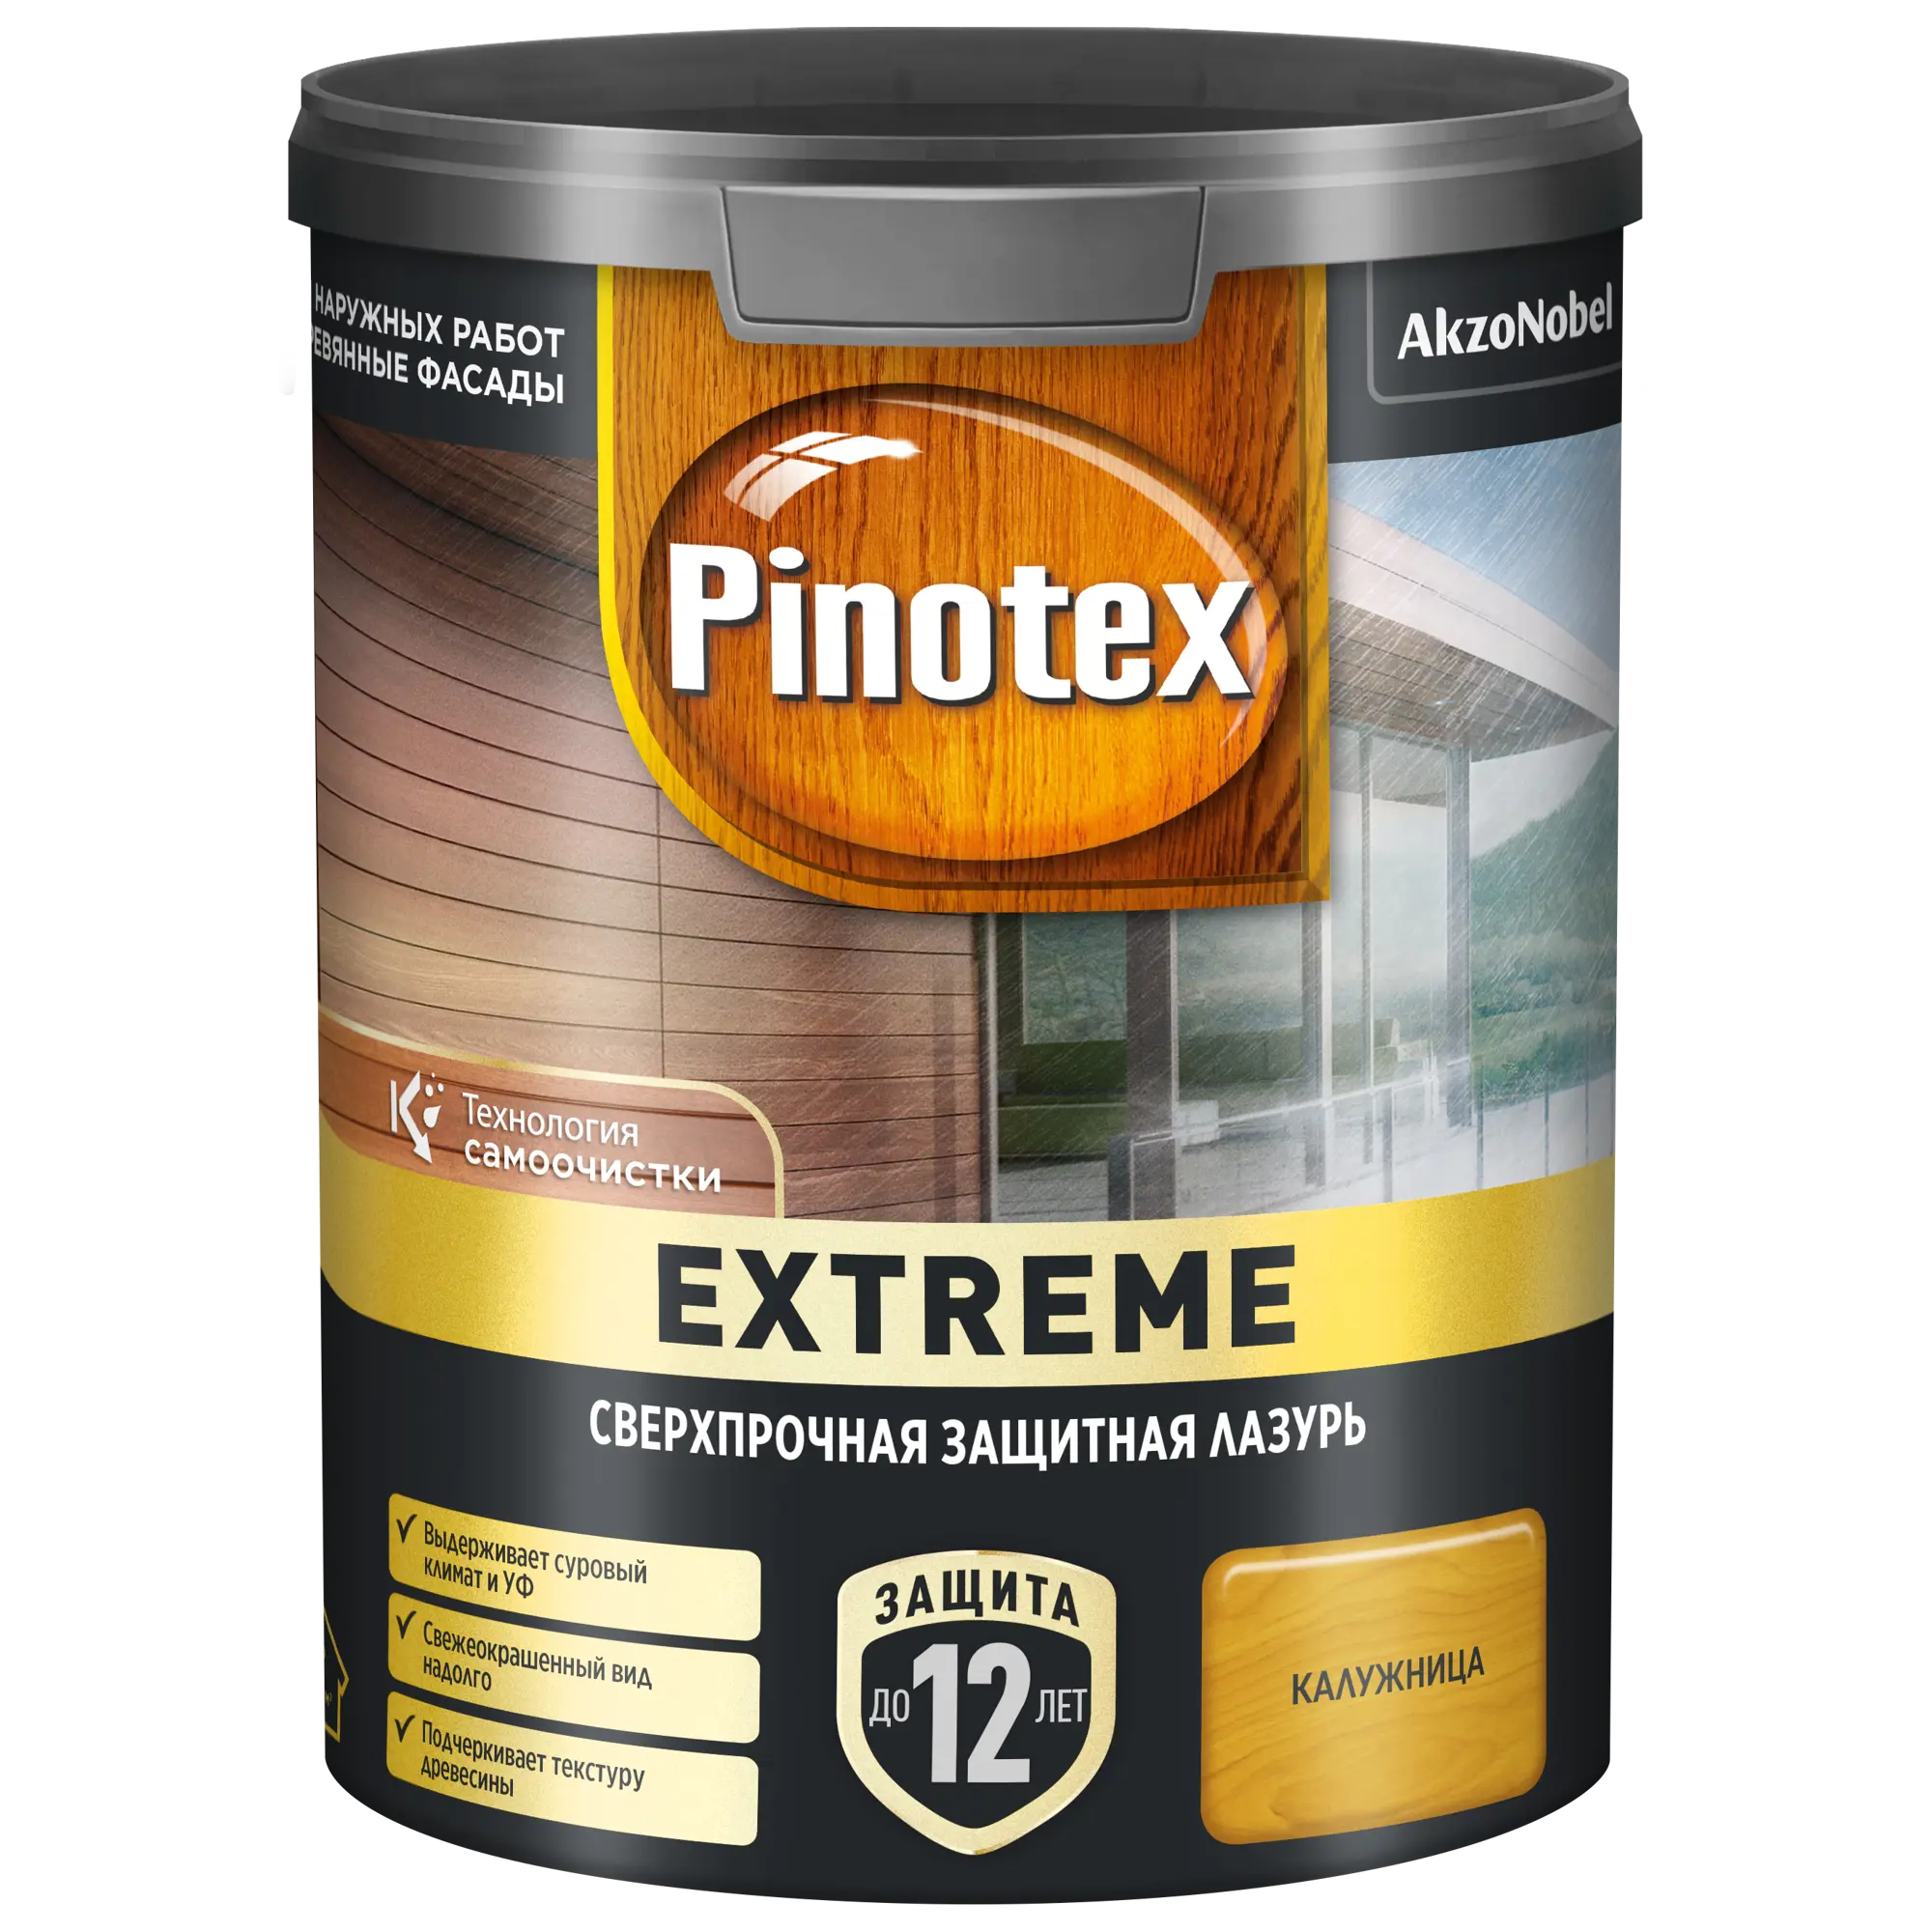 Лазурь для дерева Pinotex Extreme калужница, 0,9 л акриловый антисептик для дерева v33 extreme climate полуглянец бес ный 117446